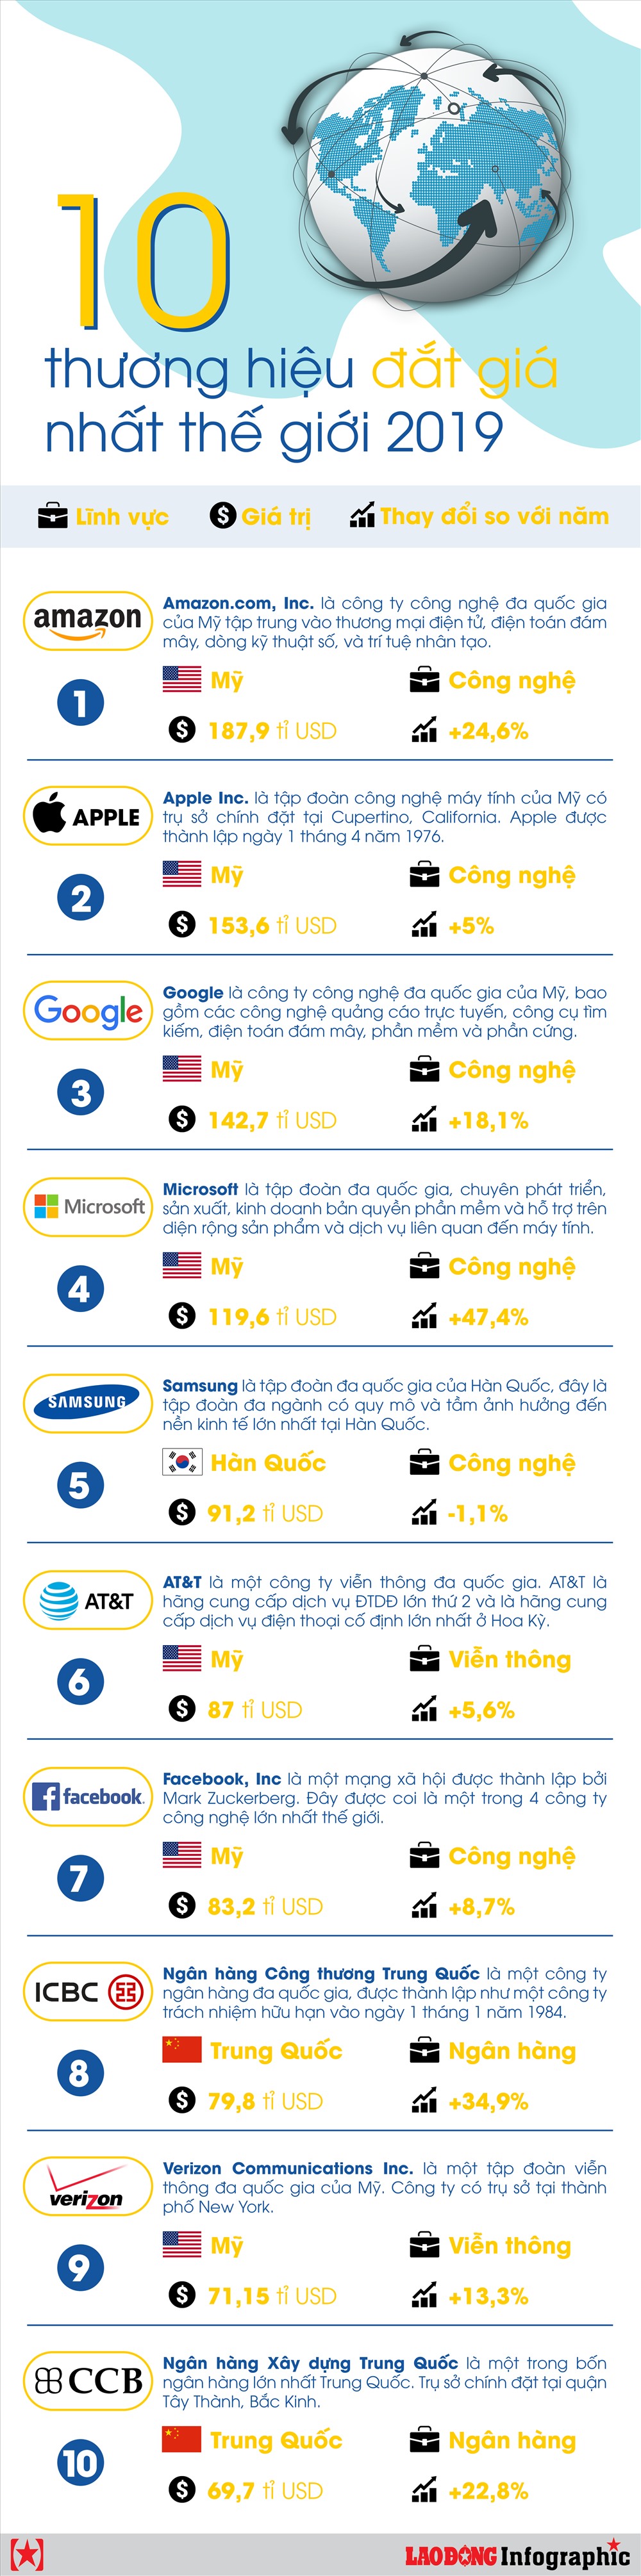 infographic dai gia cong nghe ap dao top 10 thuong hieu dat nhat the gioi